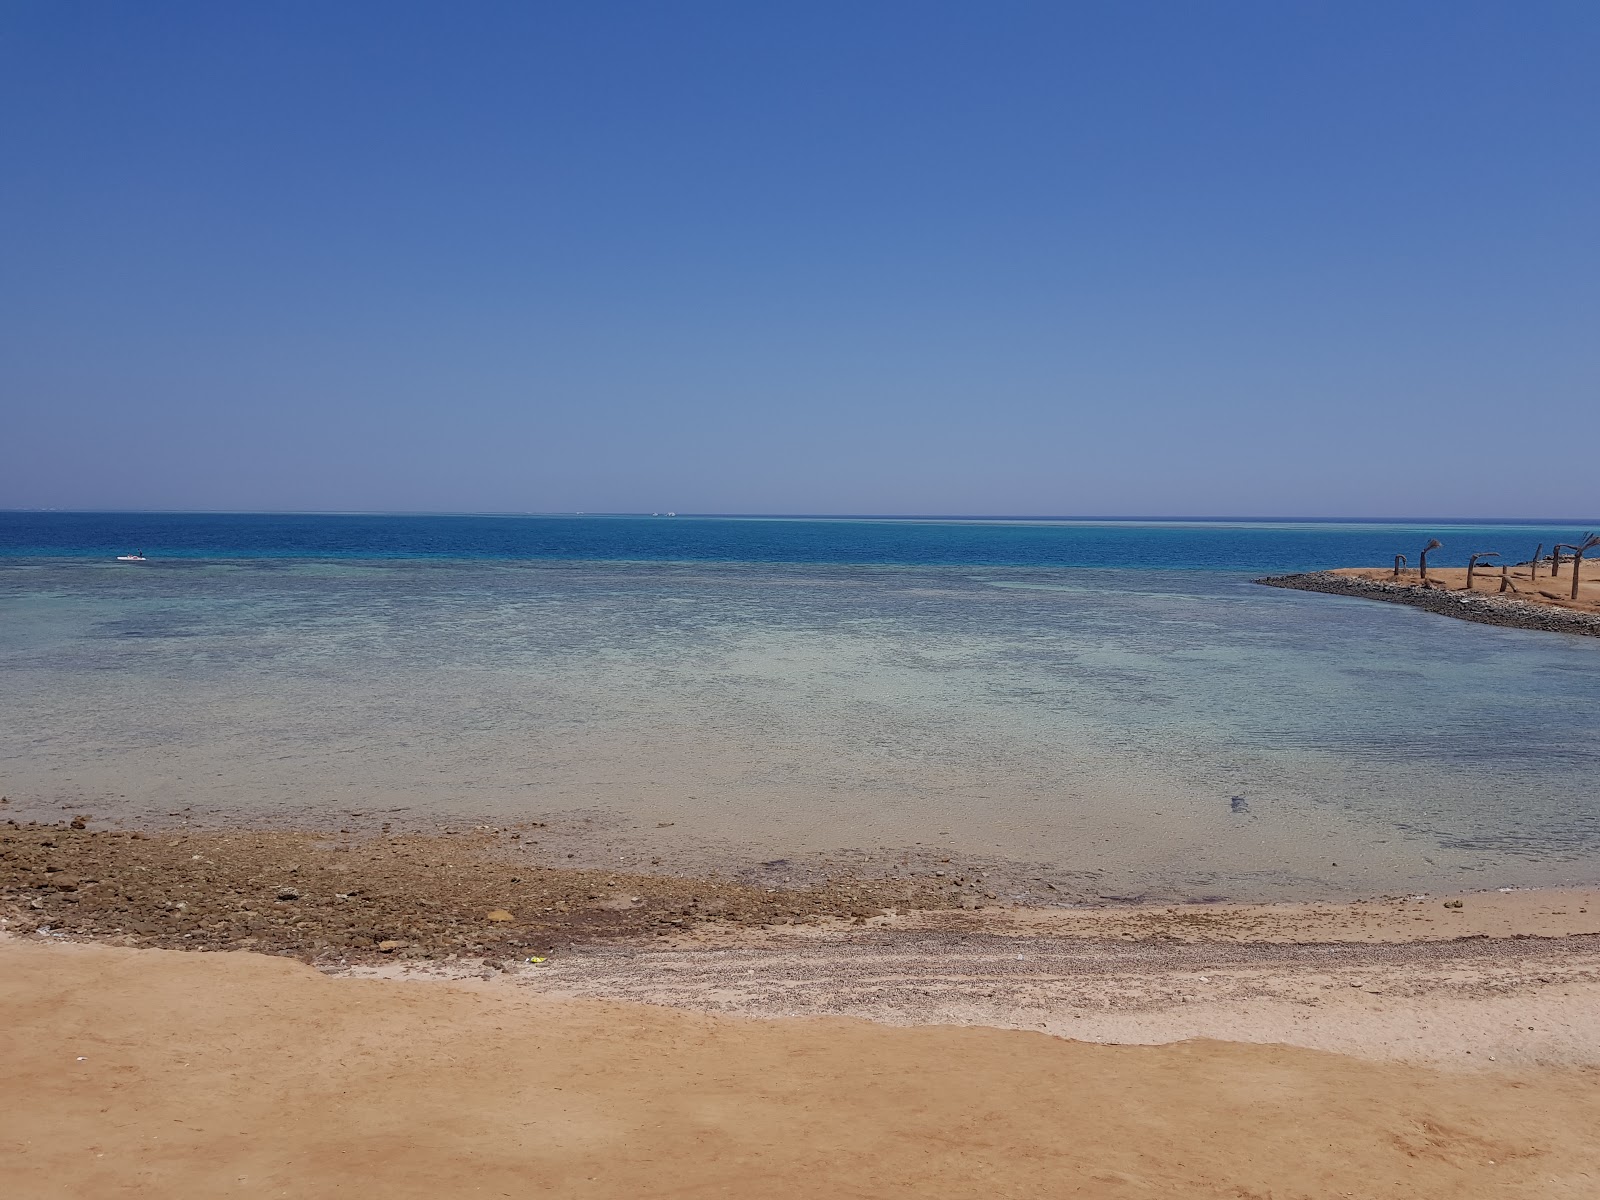 Zdjęcie El Sawaky Beach obszar kurortu nadmorskiego